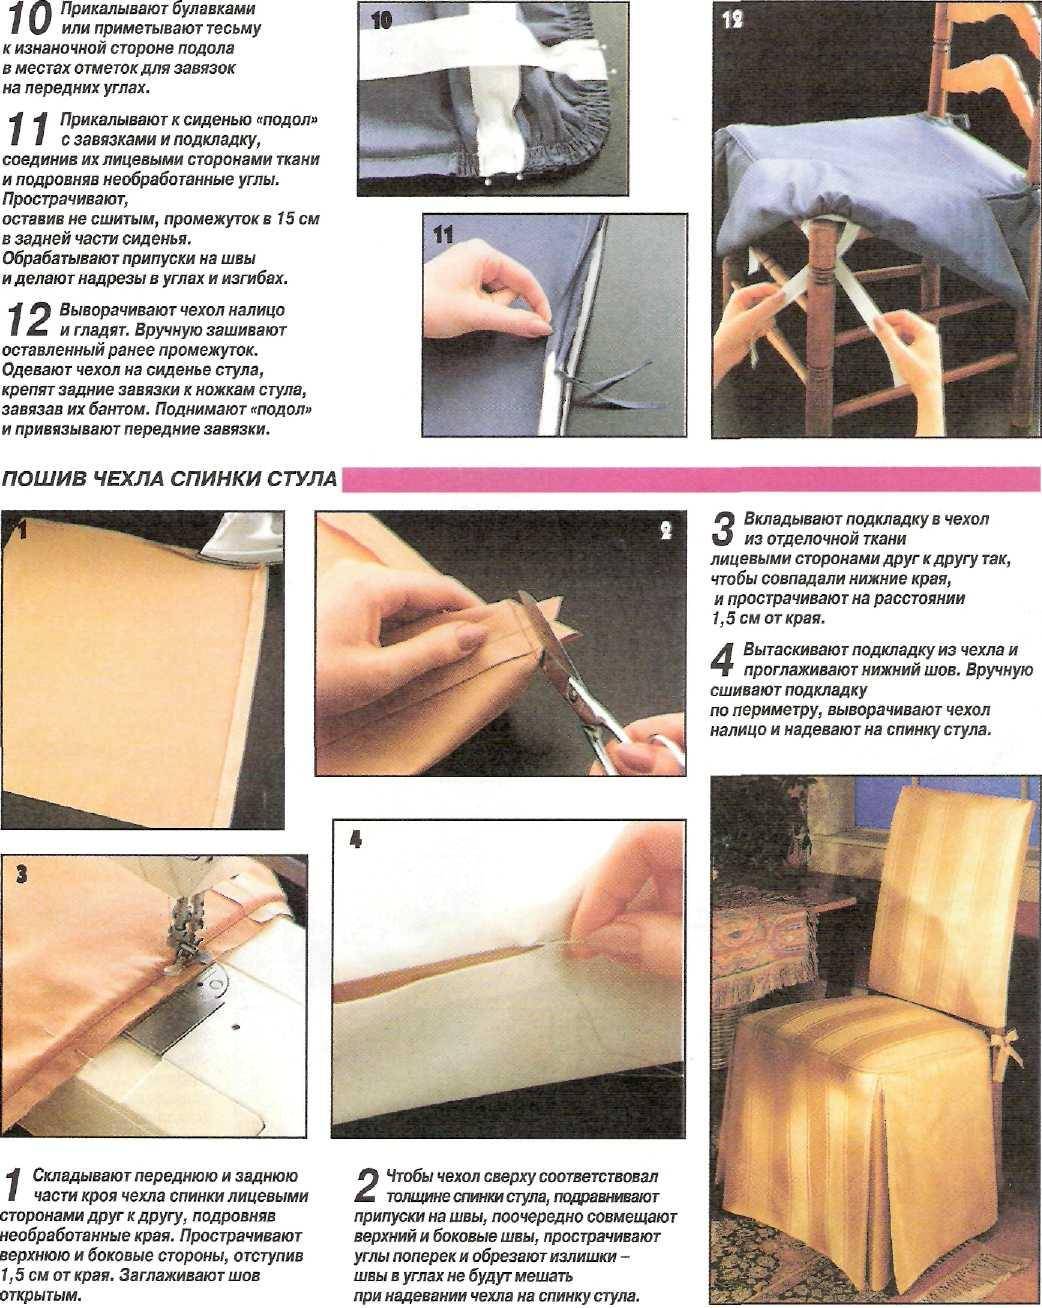 Обивка стульев: ткани, как правильно обтянуть стул своими руками, правила перетяжки дома, видео и фото, примеры чехлов на кухню